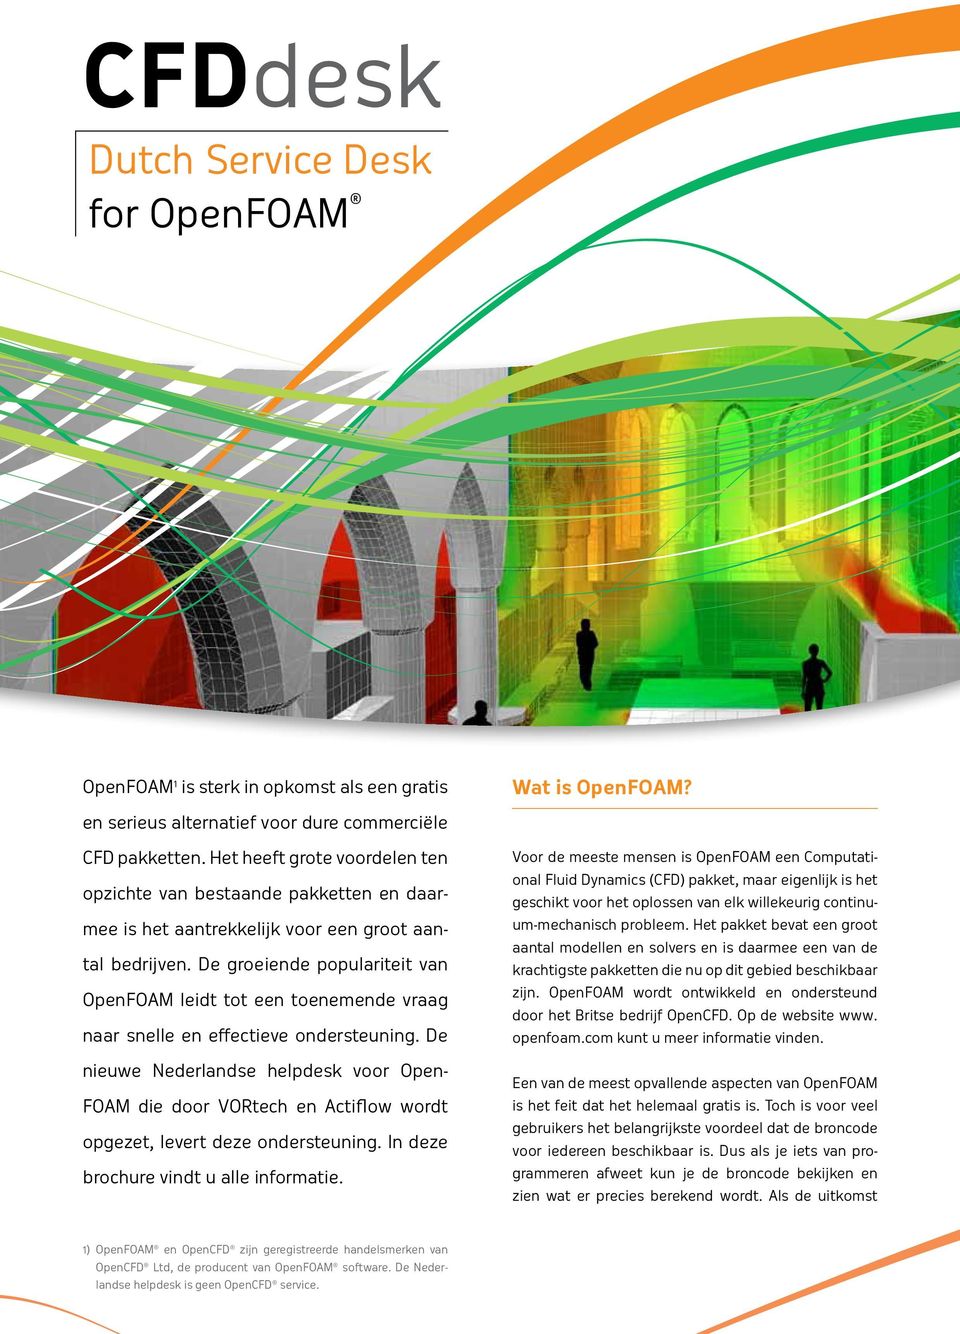 De groeiende populariteit van OpenFOAM leidt tot een toenemende vraag naar snelle en effectieve ondersteuning.